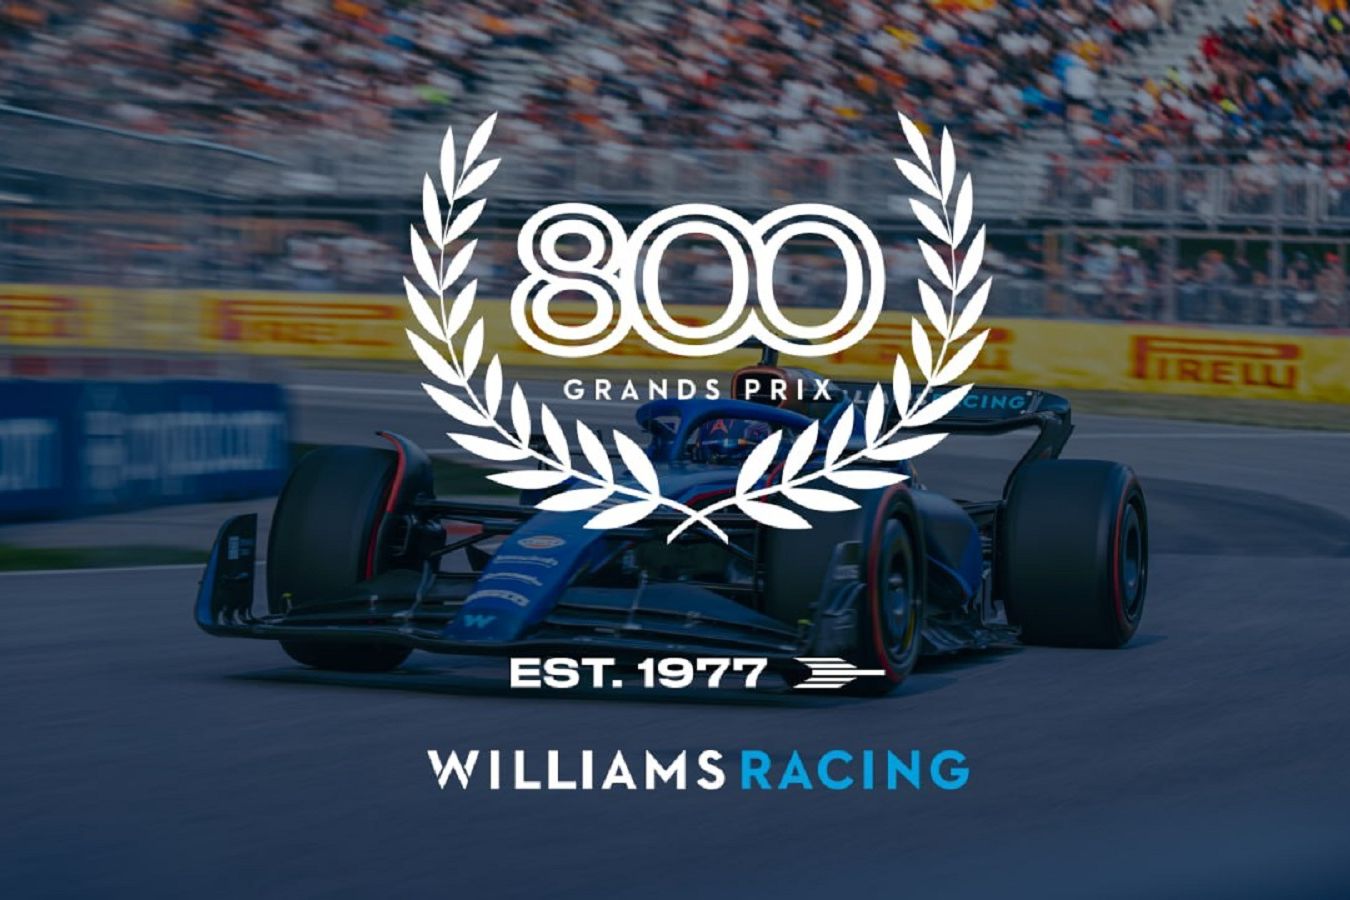 «Уильямс» представит специальную ливрею и логотип к 800-му Гран-при в Формуле-1